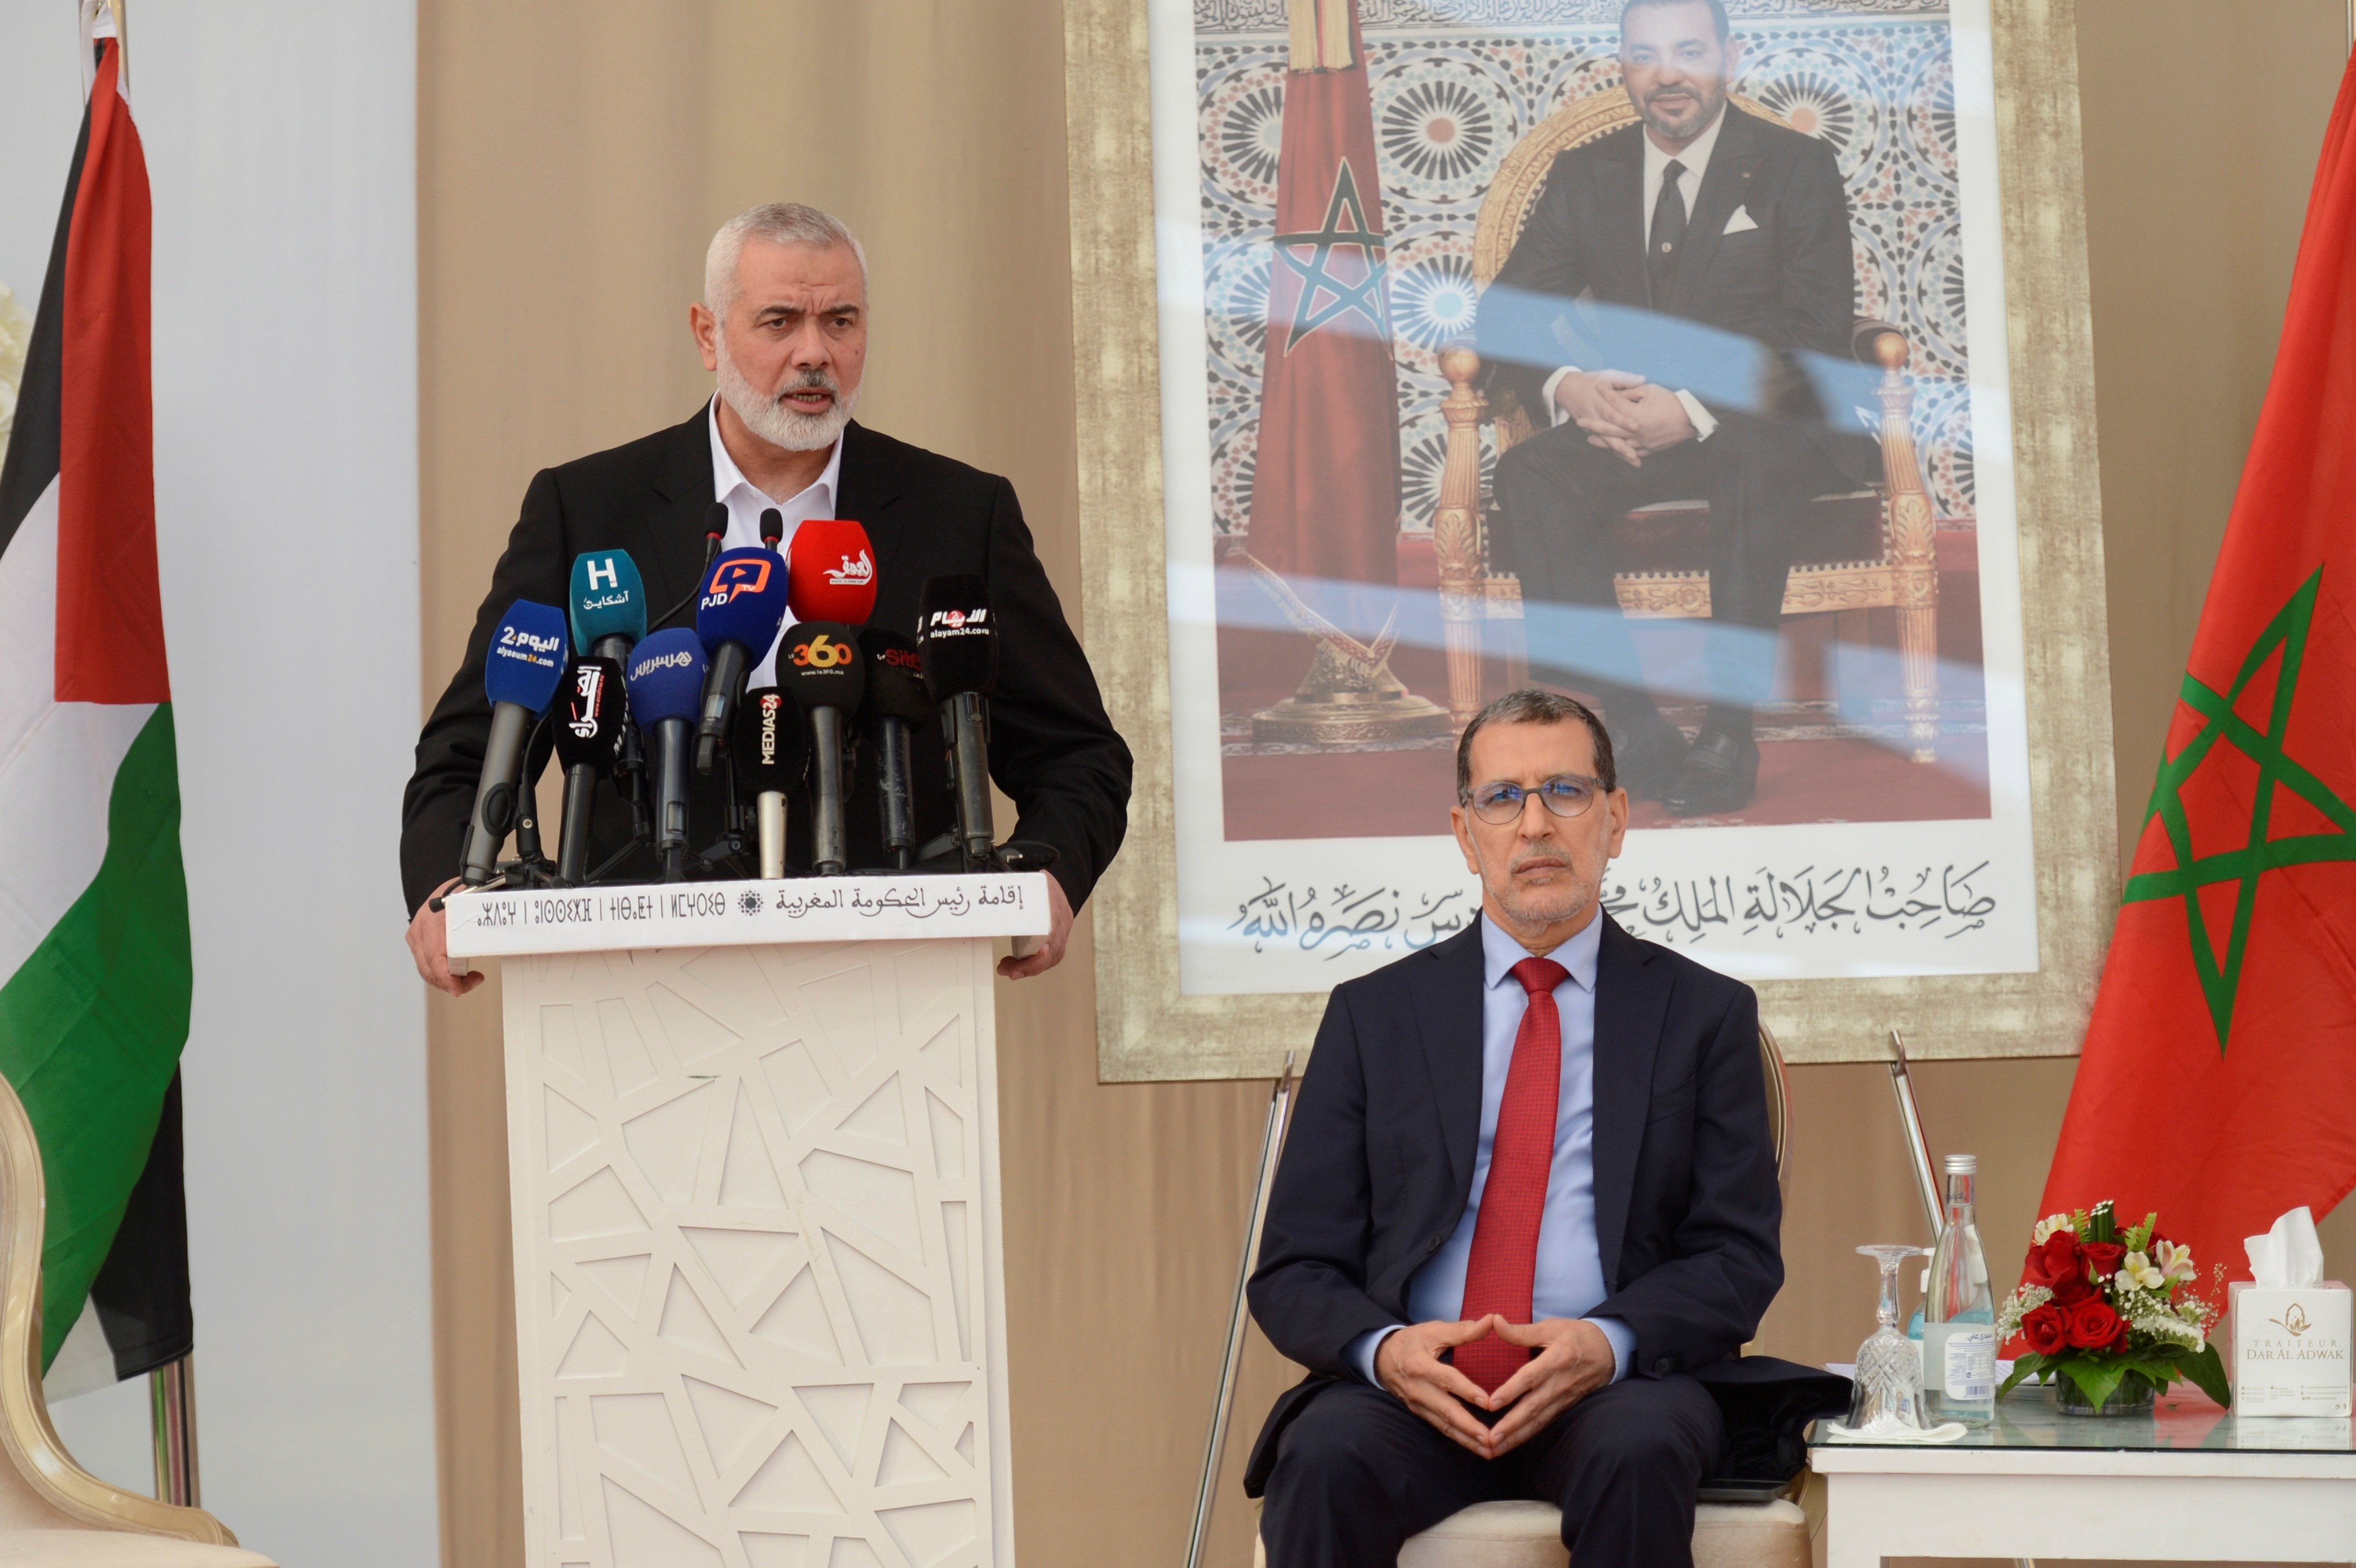 Sorprenent visita del líder de Hamàs al Marroc, en ple reconeixement d'Israel